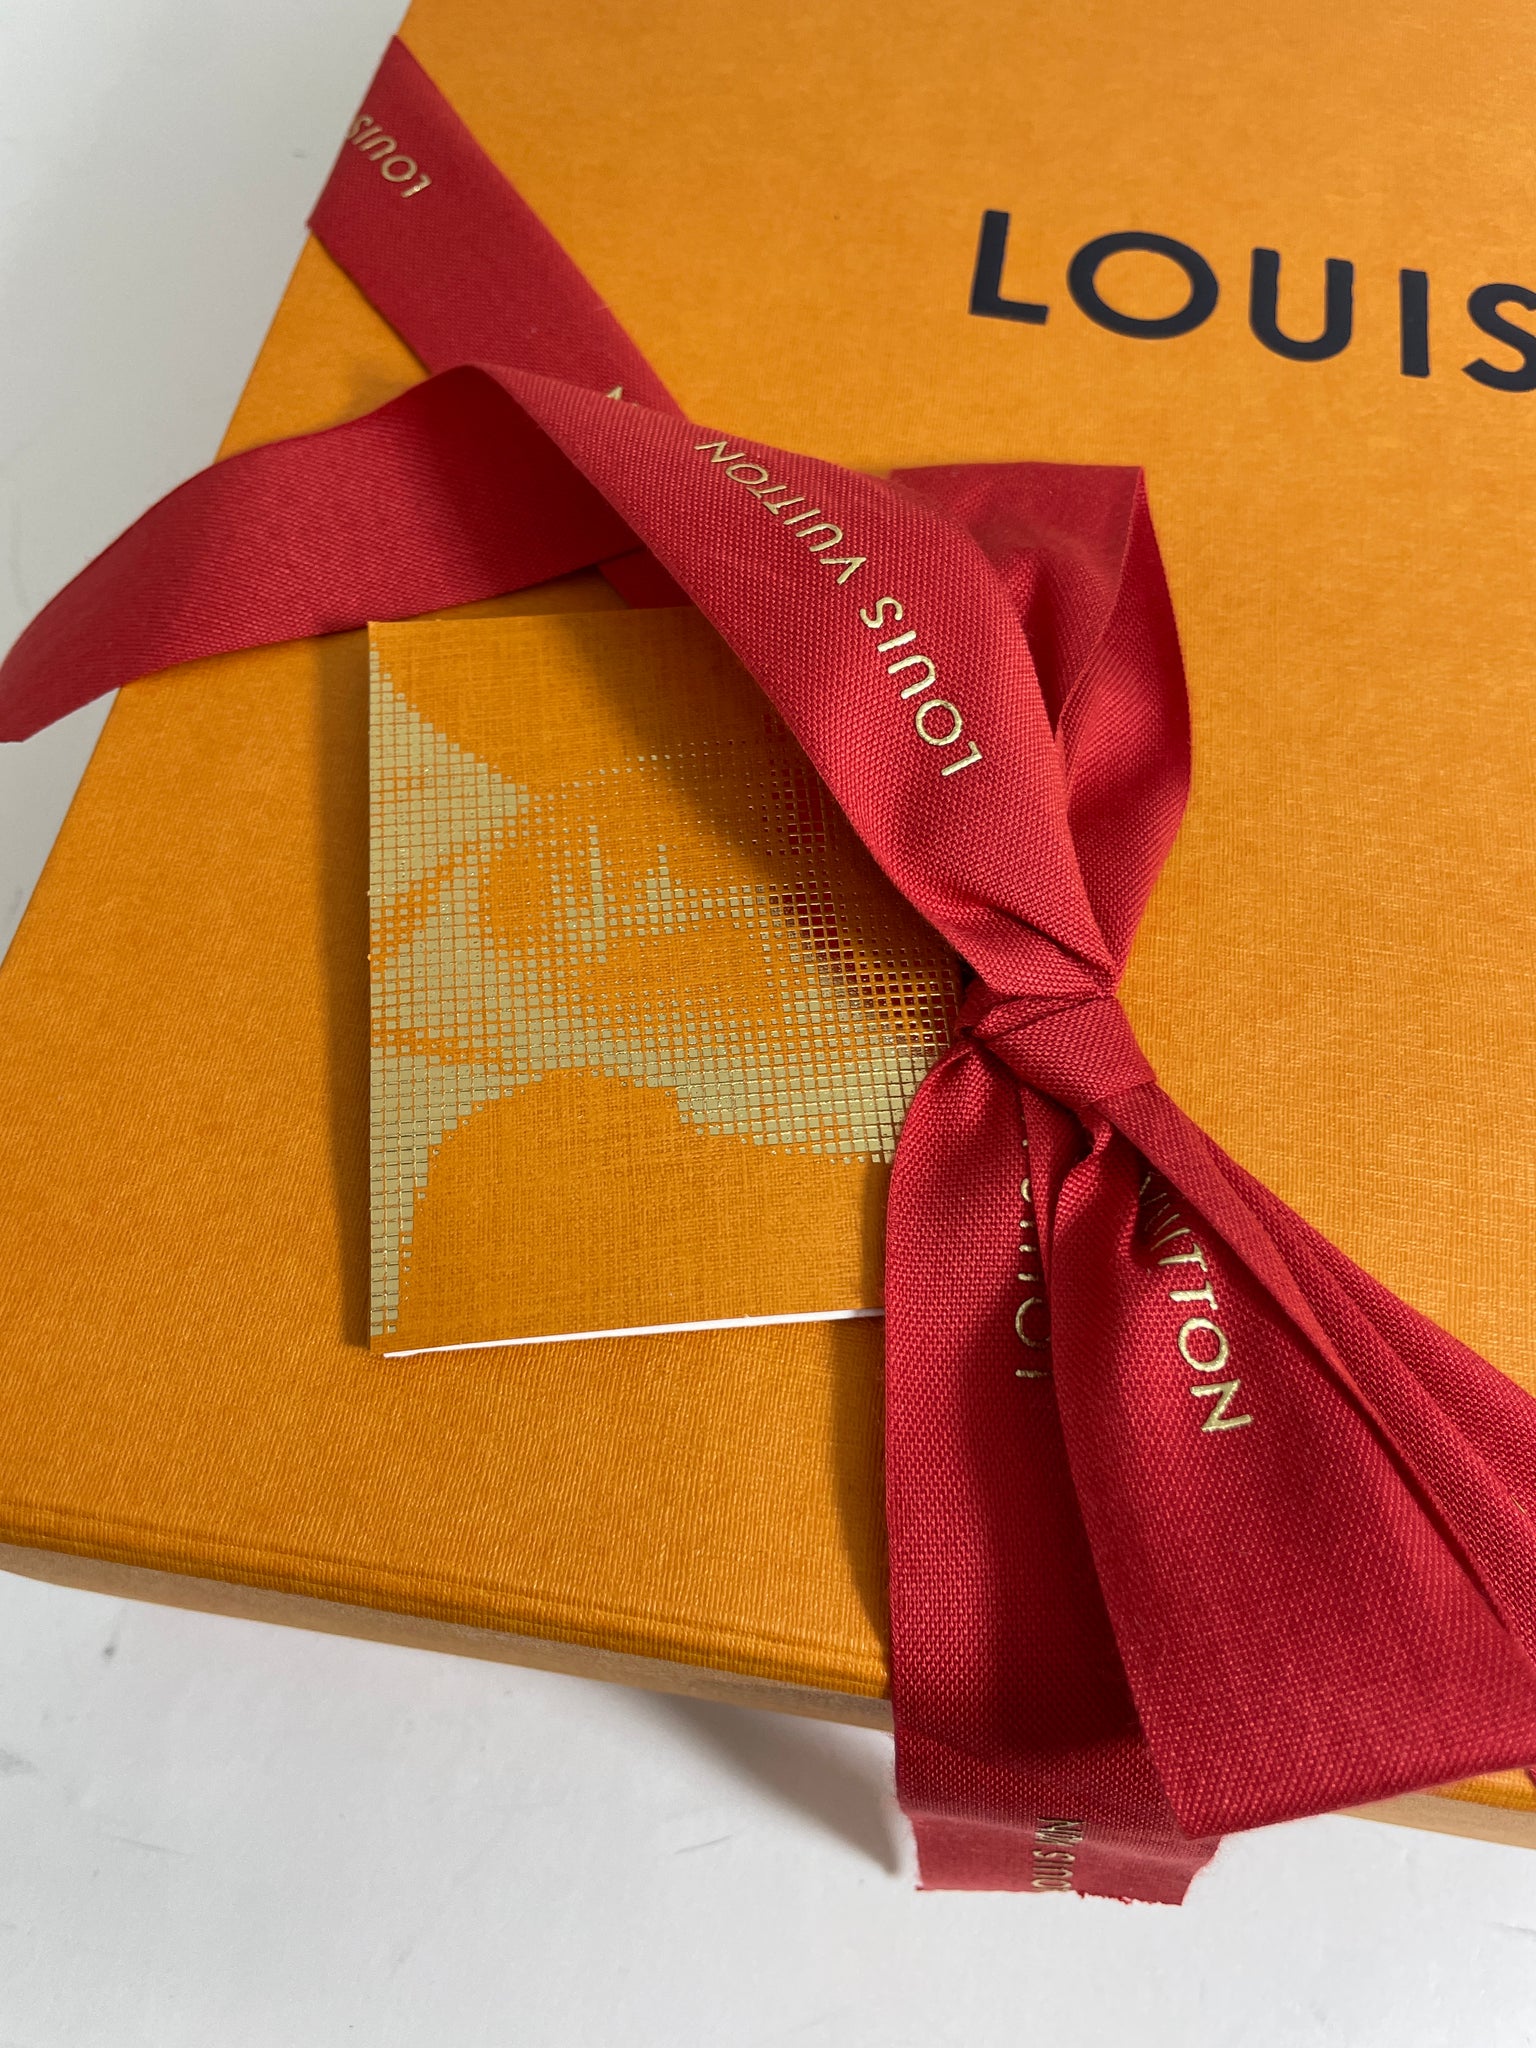 Louis Vuitton Monogram Etui Voyage MM Pouch – The Closet